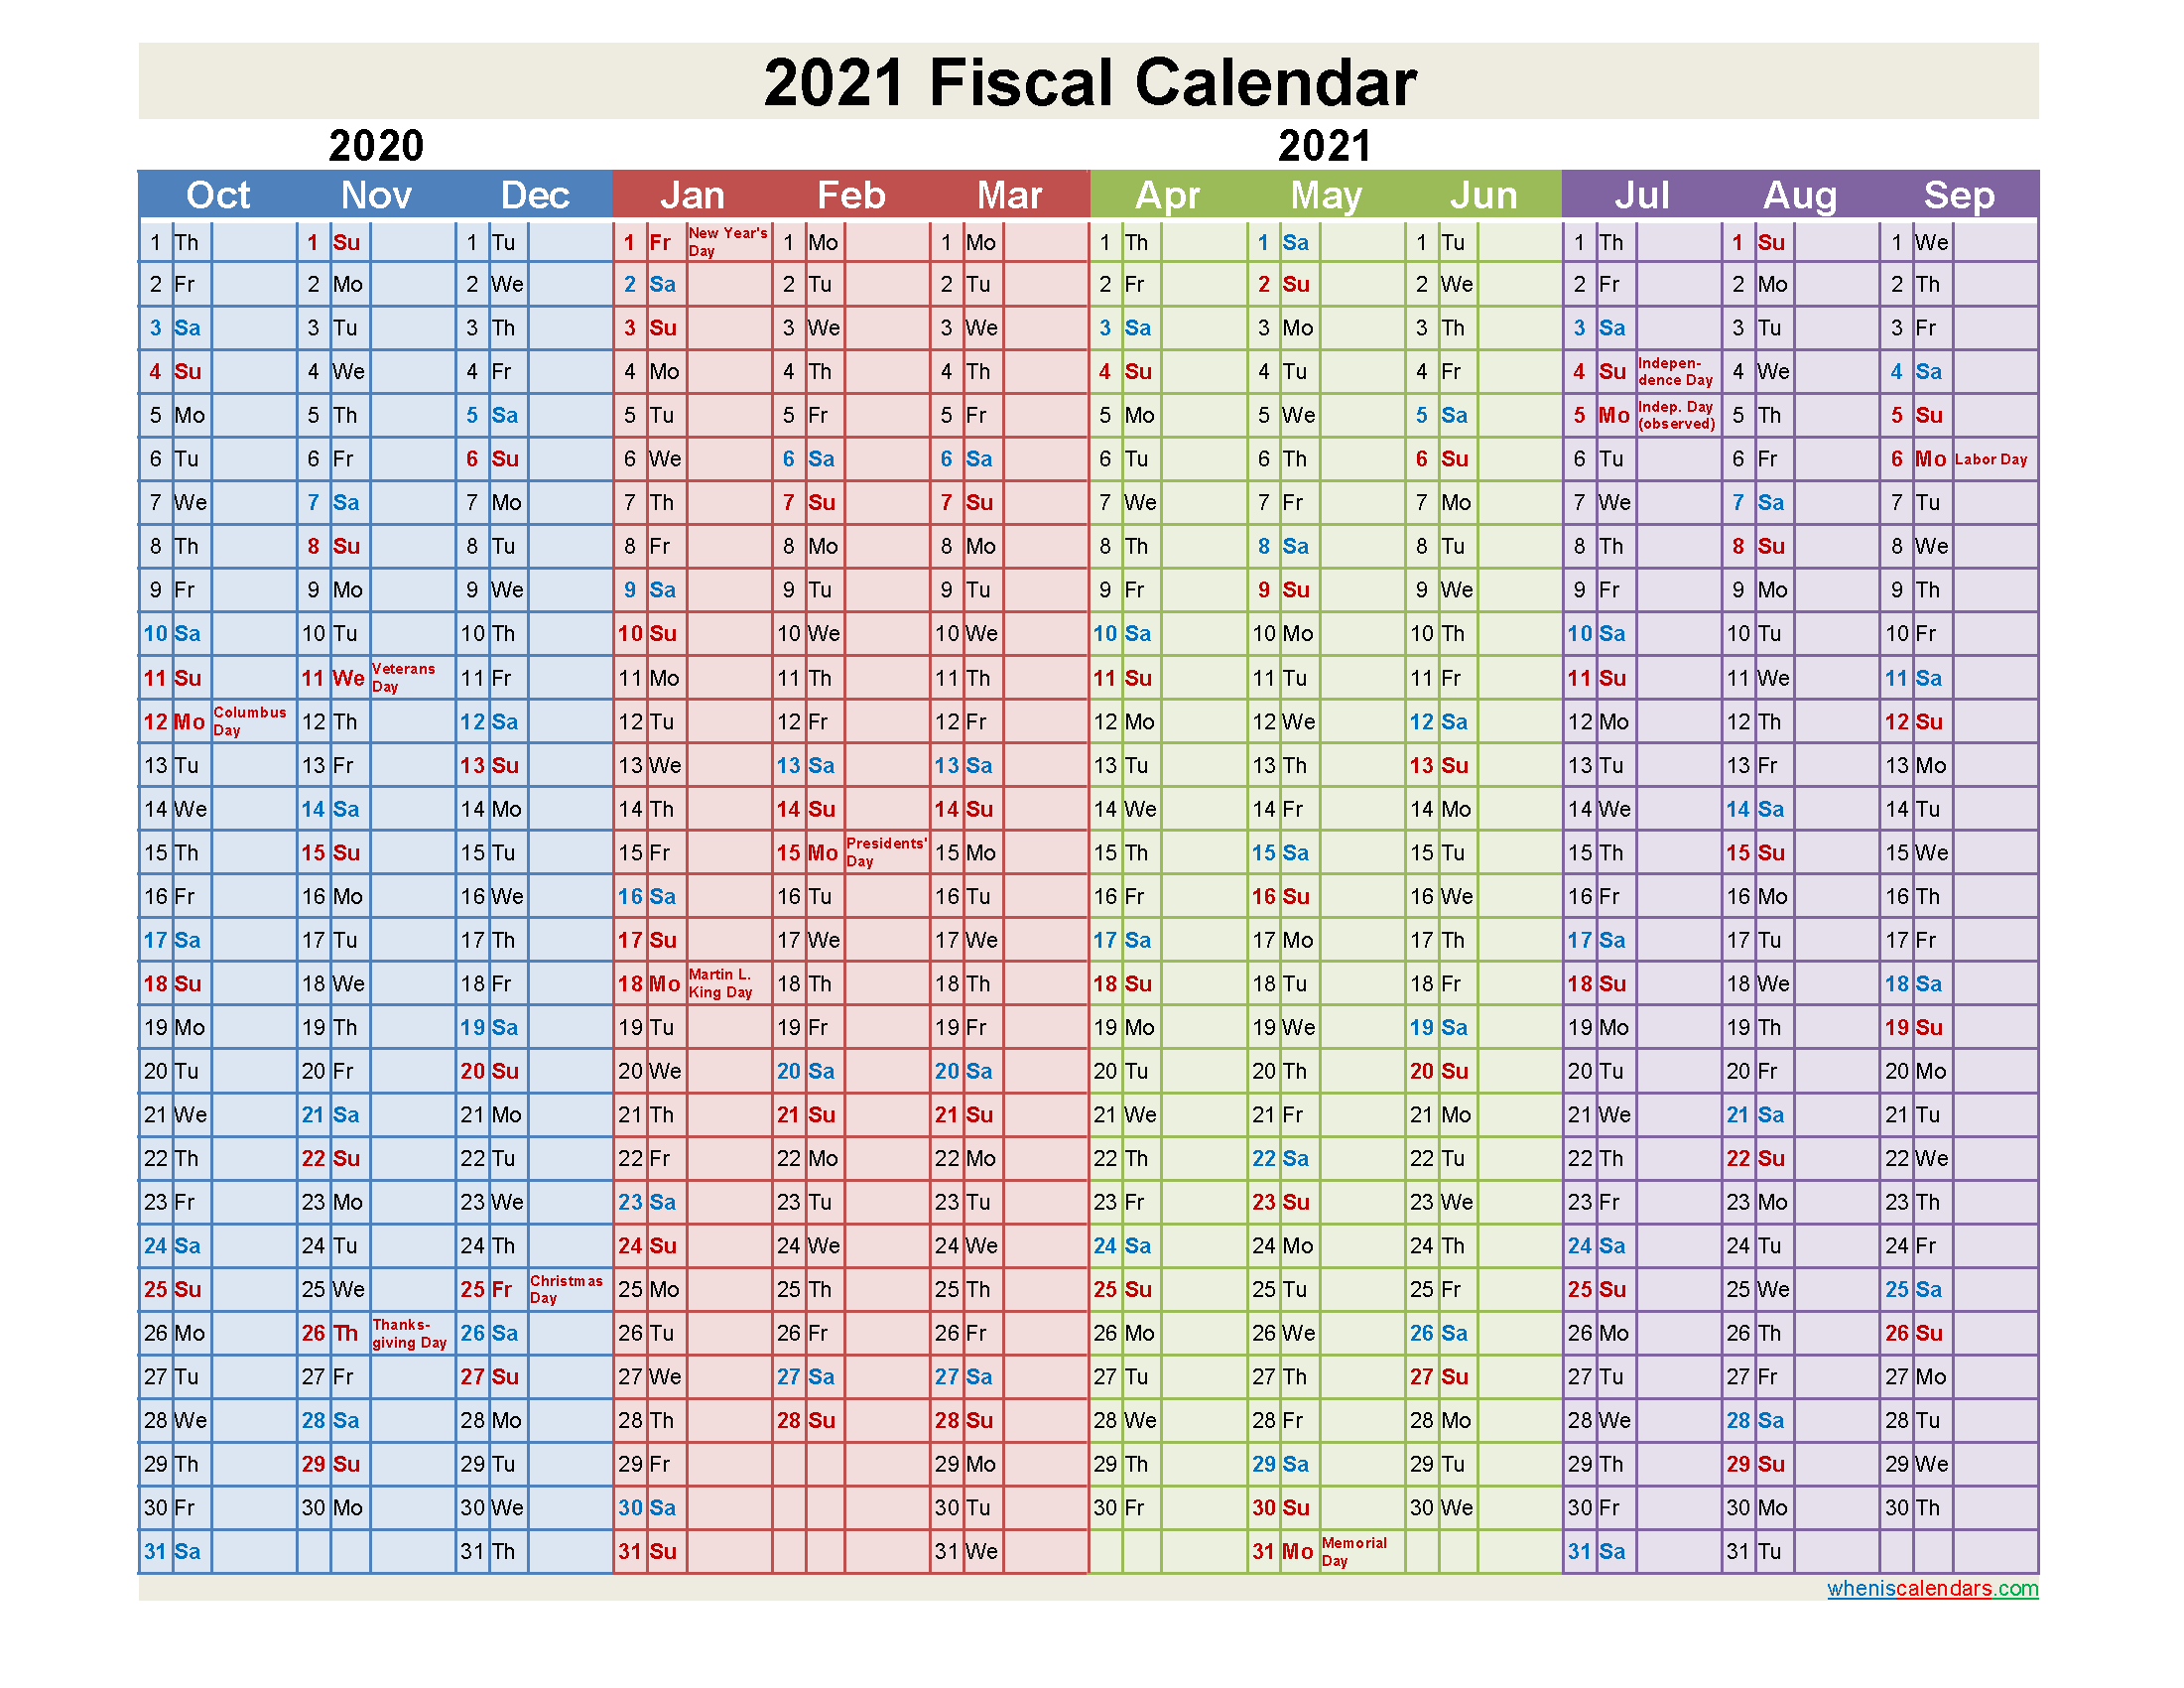 cisco-financial-calendar